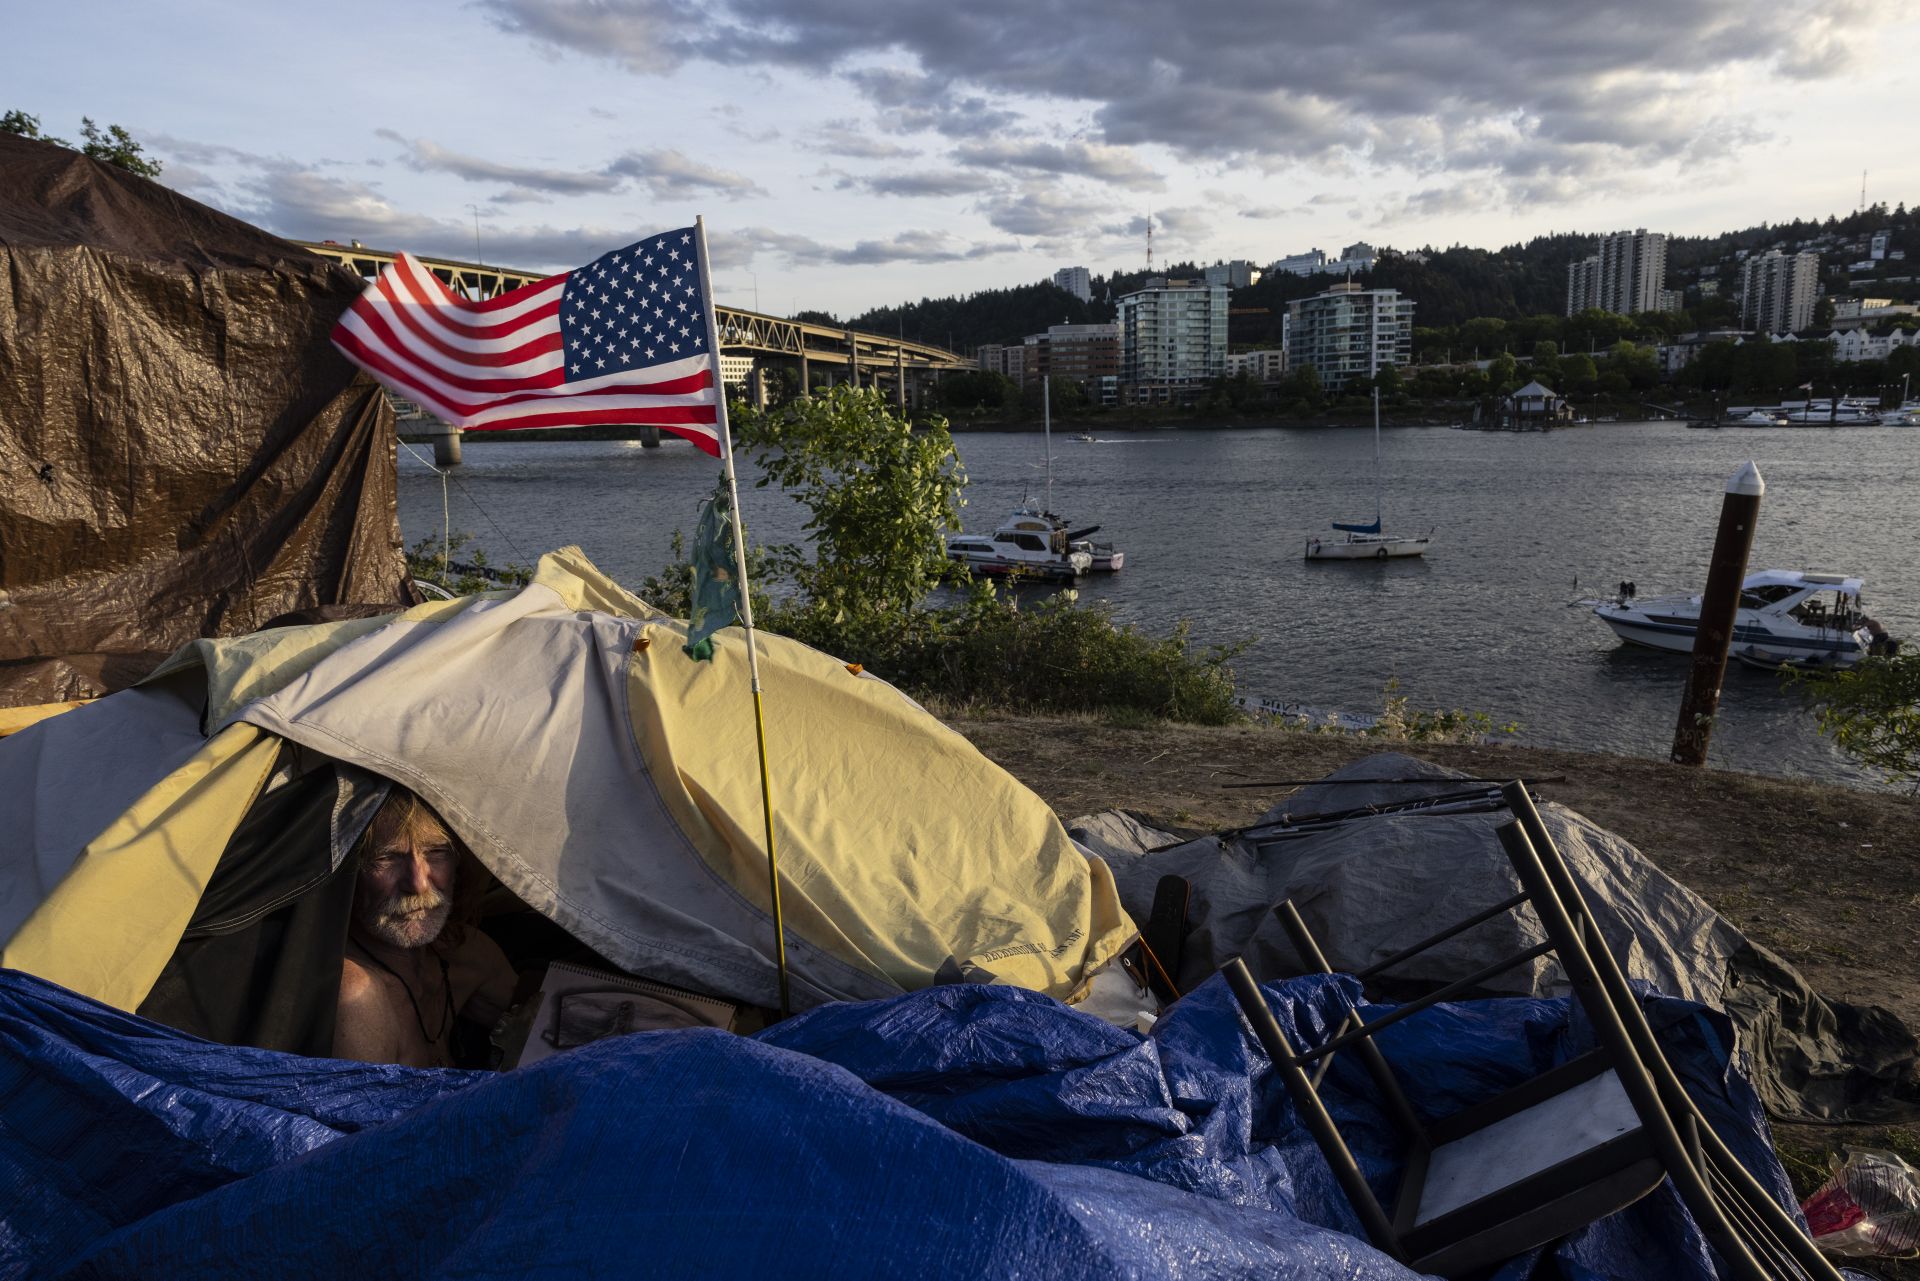  10 юни 2021 година - Бездомникът Франк стои в палатката си с аспект към реката в Портланд, Орегон. Протестите след убийството на Джордж Флойд, повишаването на гибелта от въоръжено принуждение и все множеството бездомници провокират въпроса, дали най-големият град в Орегон може да се възвърне. 